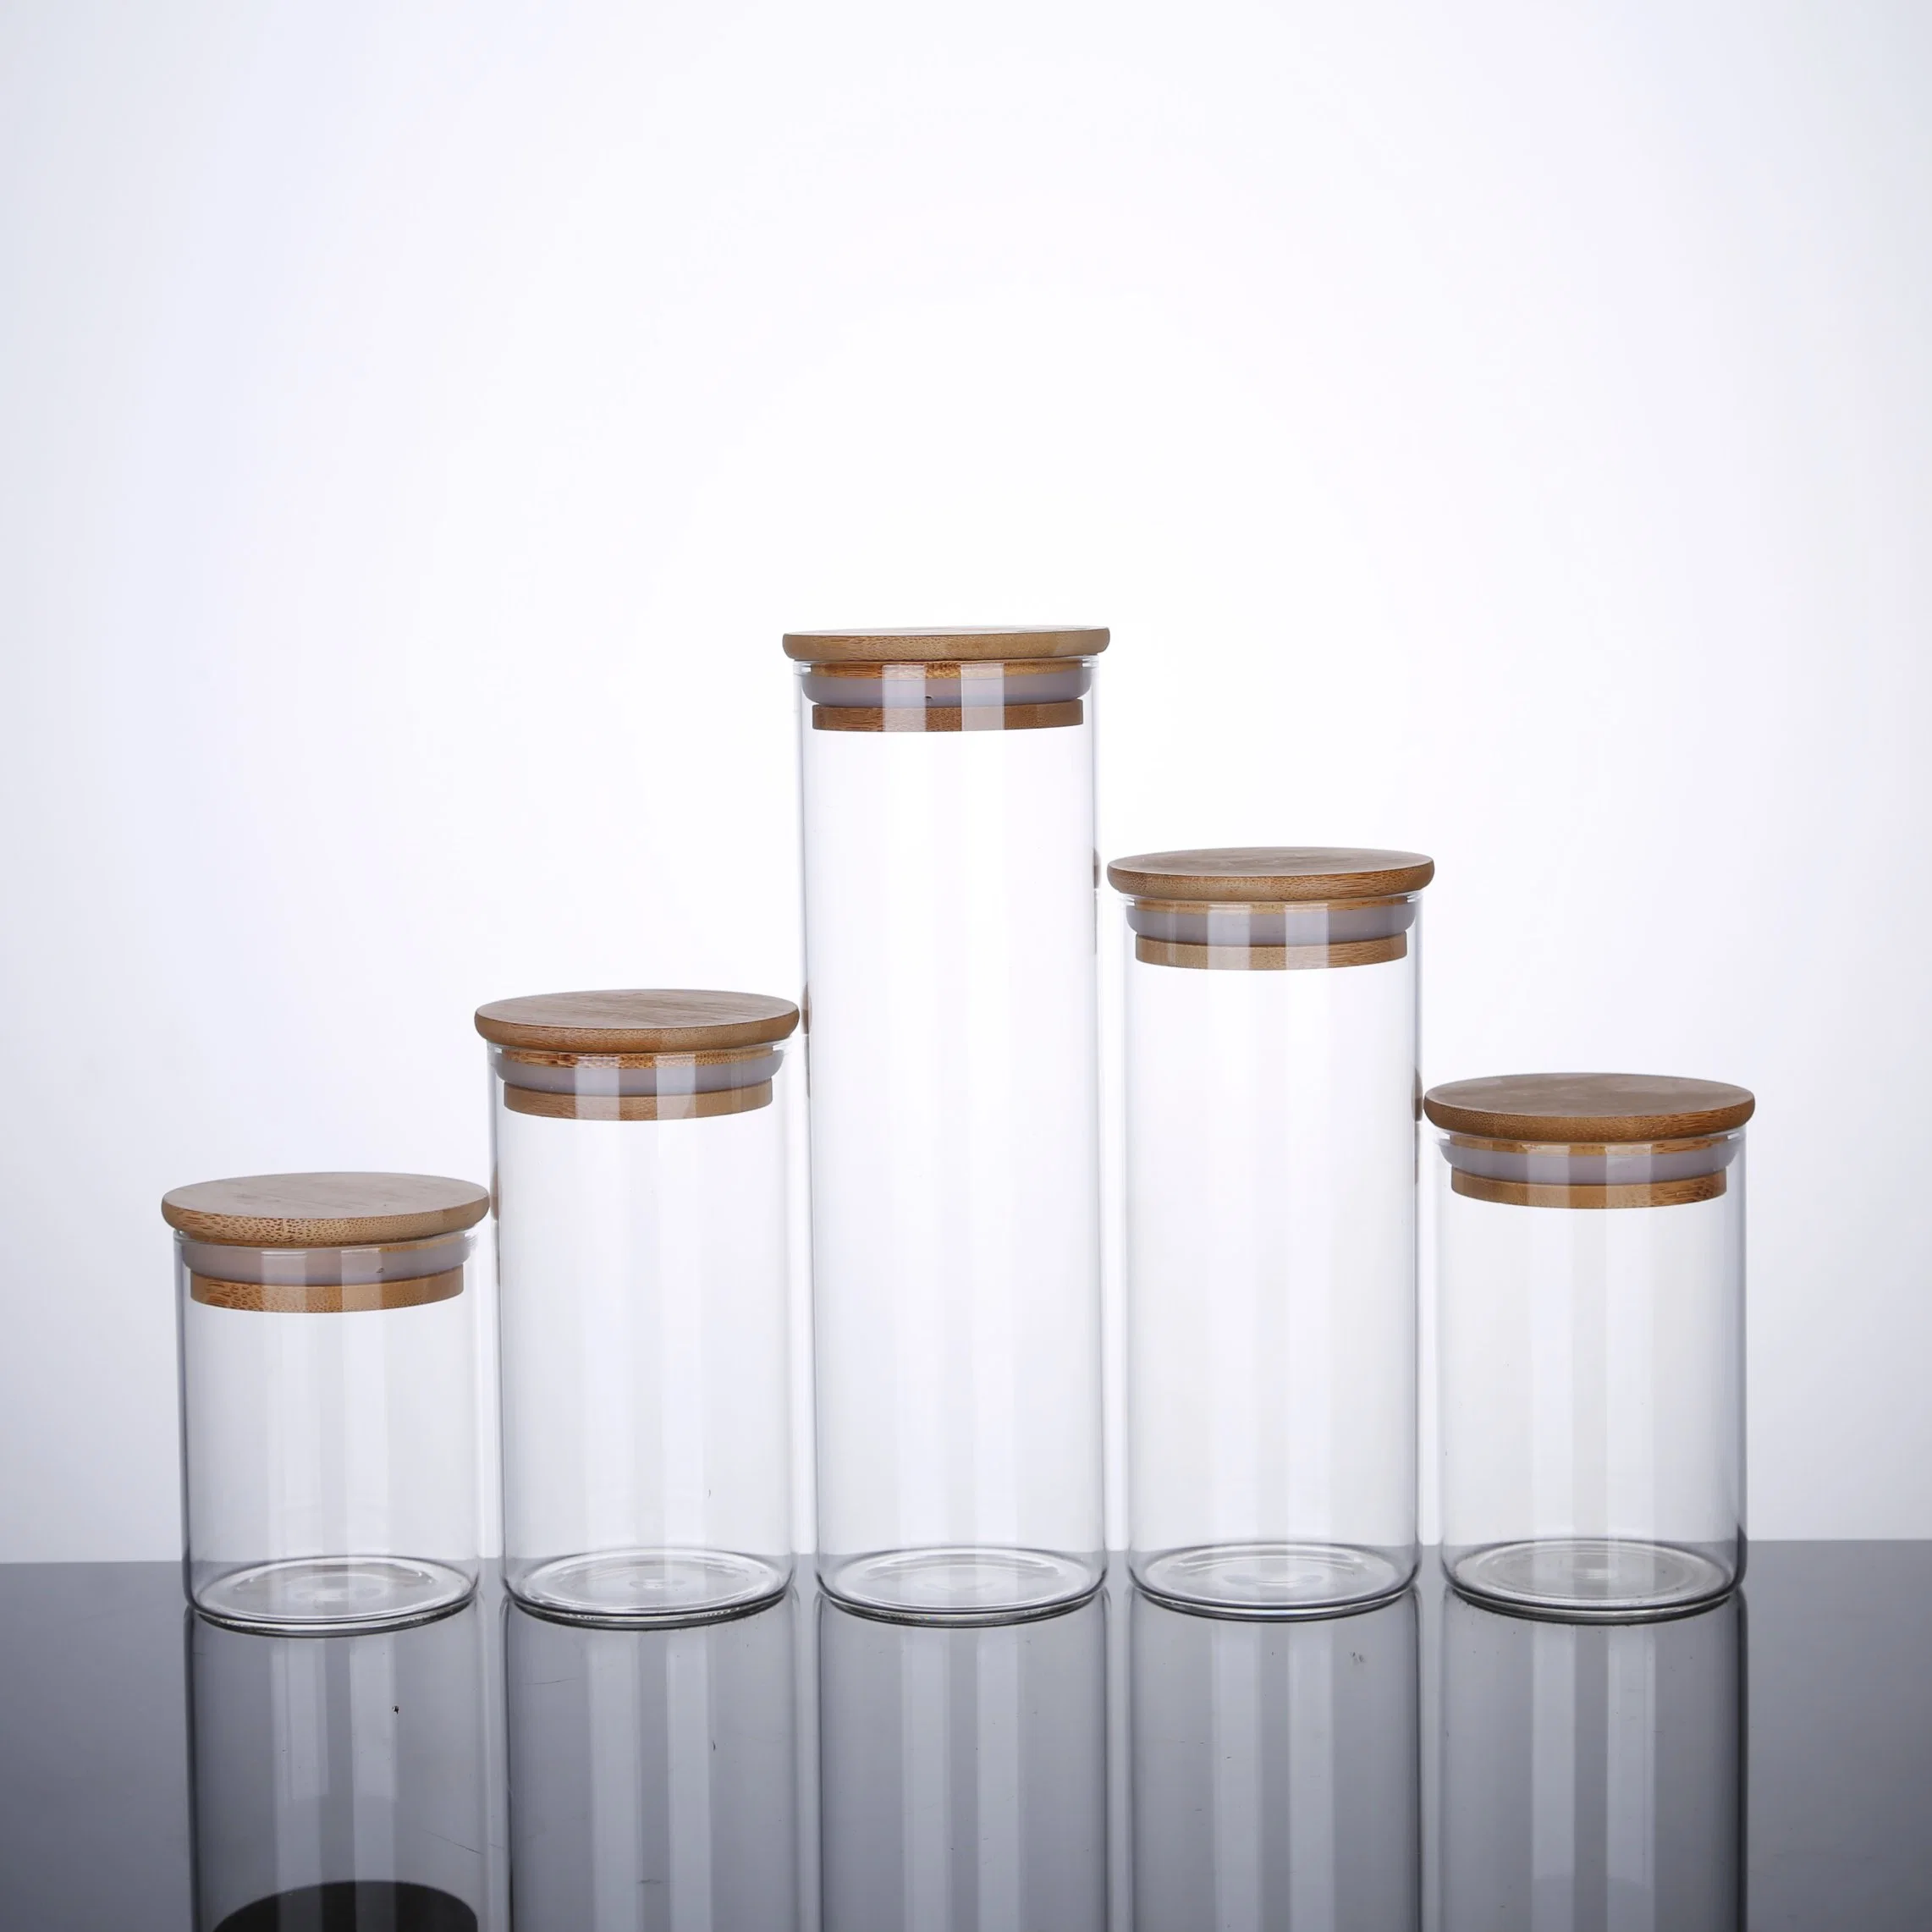 Venda de frascos de recipientes Spice com conjunto de copo de vidro para armazenamento em cozinha borossilicato Com tampa de bambu